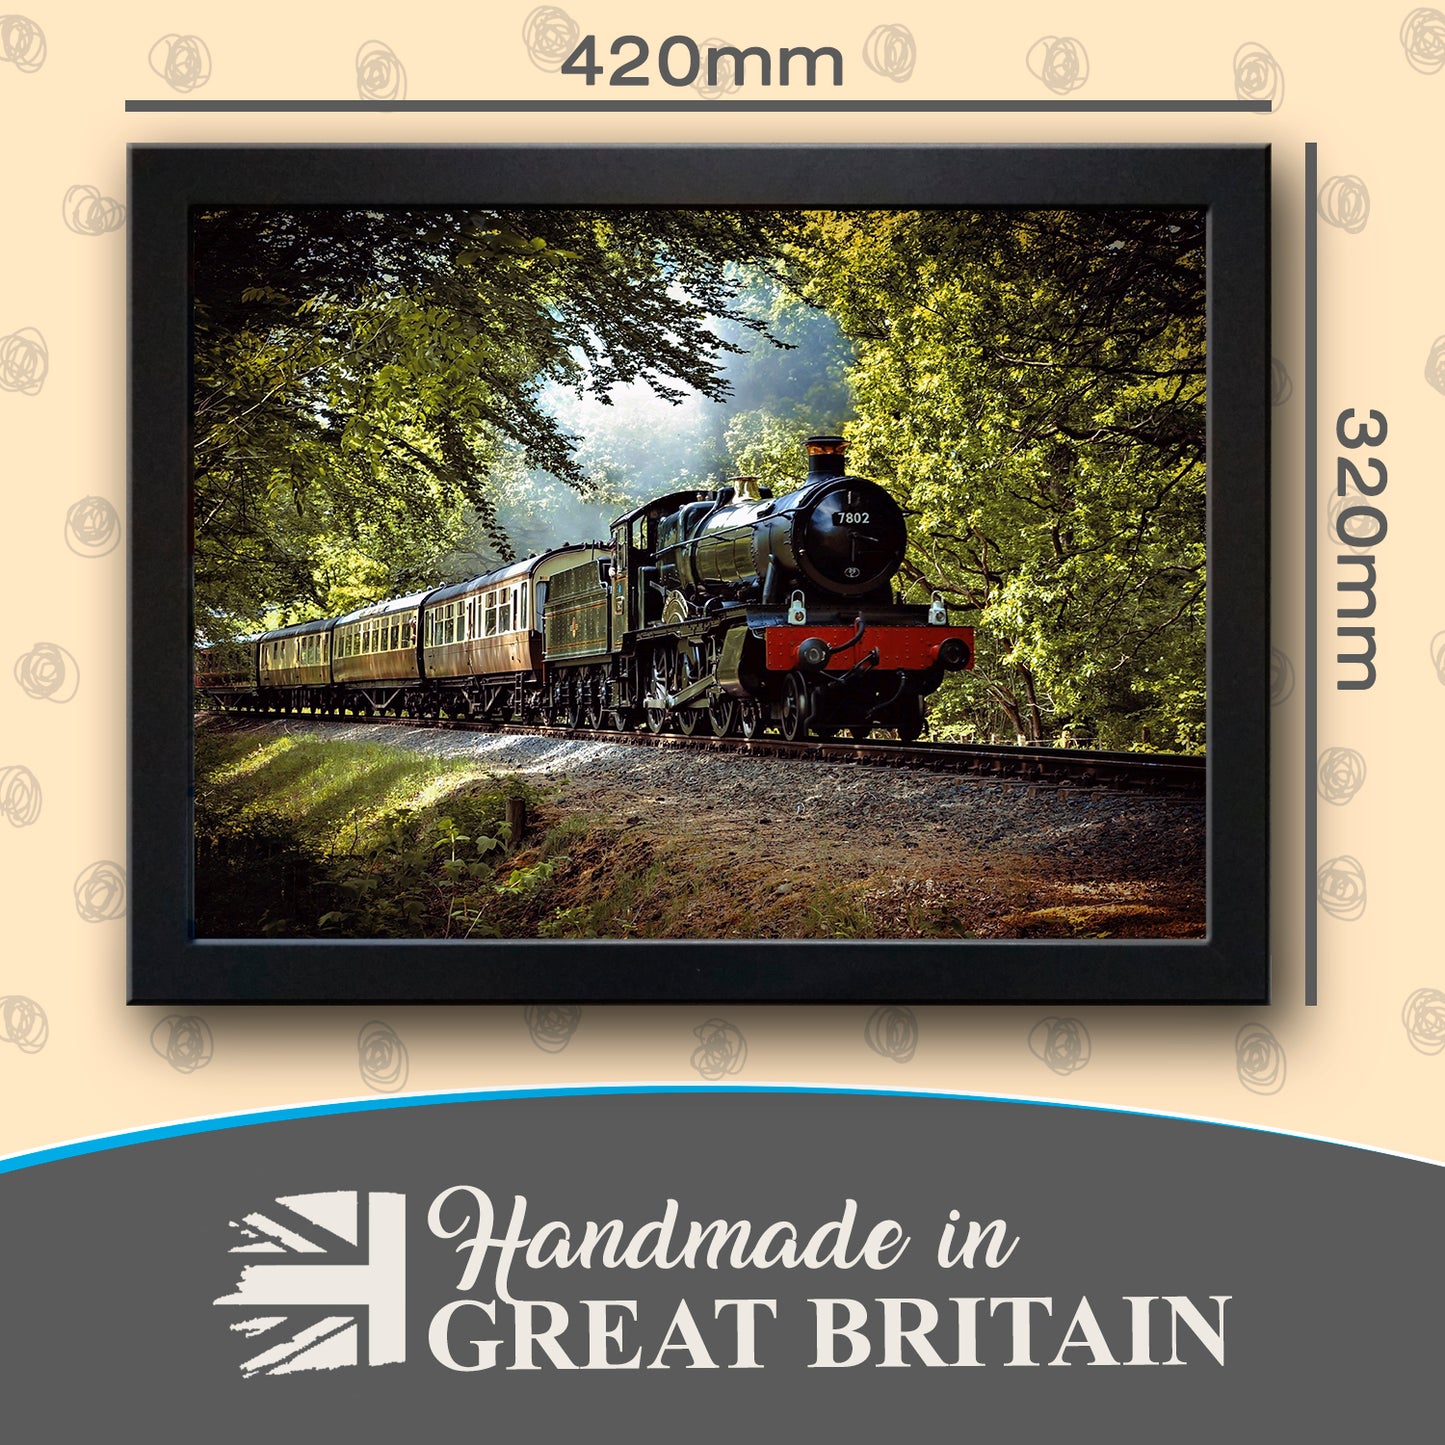 GWR Great Western Railway Manor Class Steam Train Cushioned Lap Tray